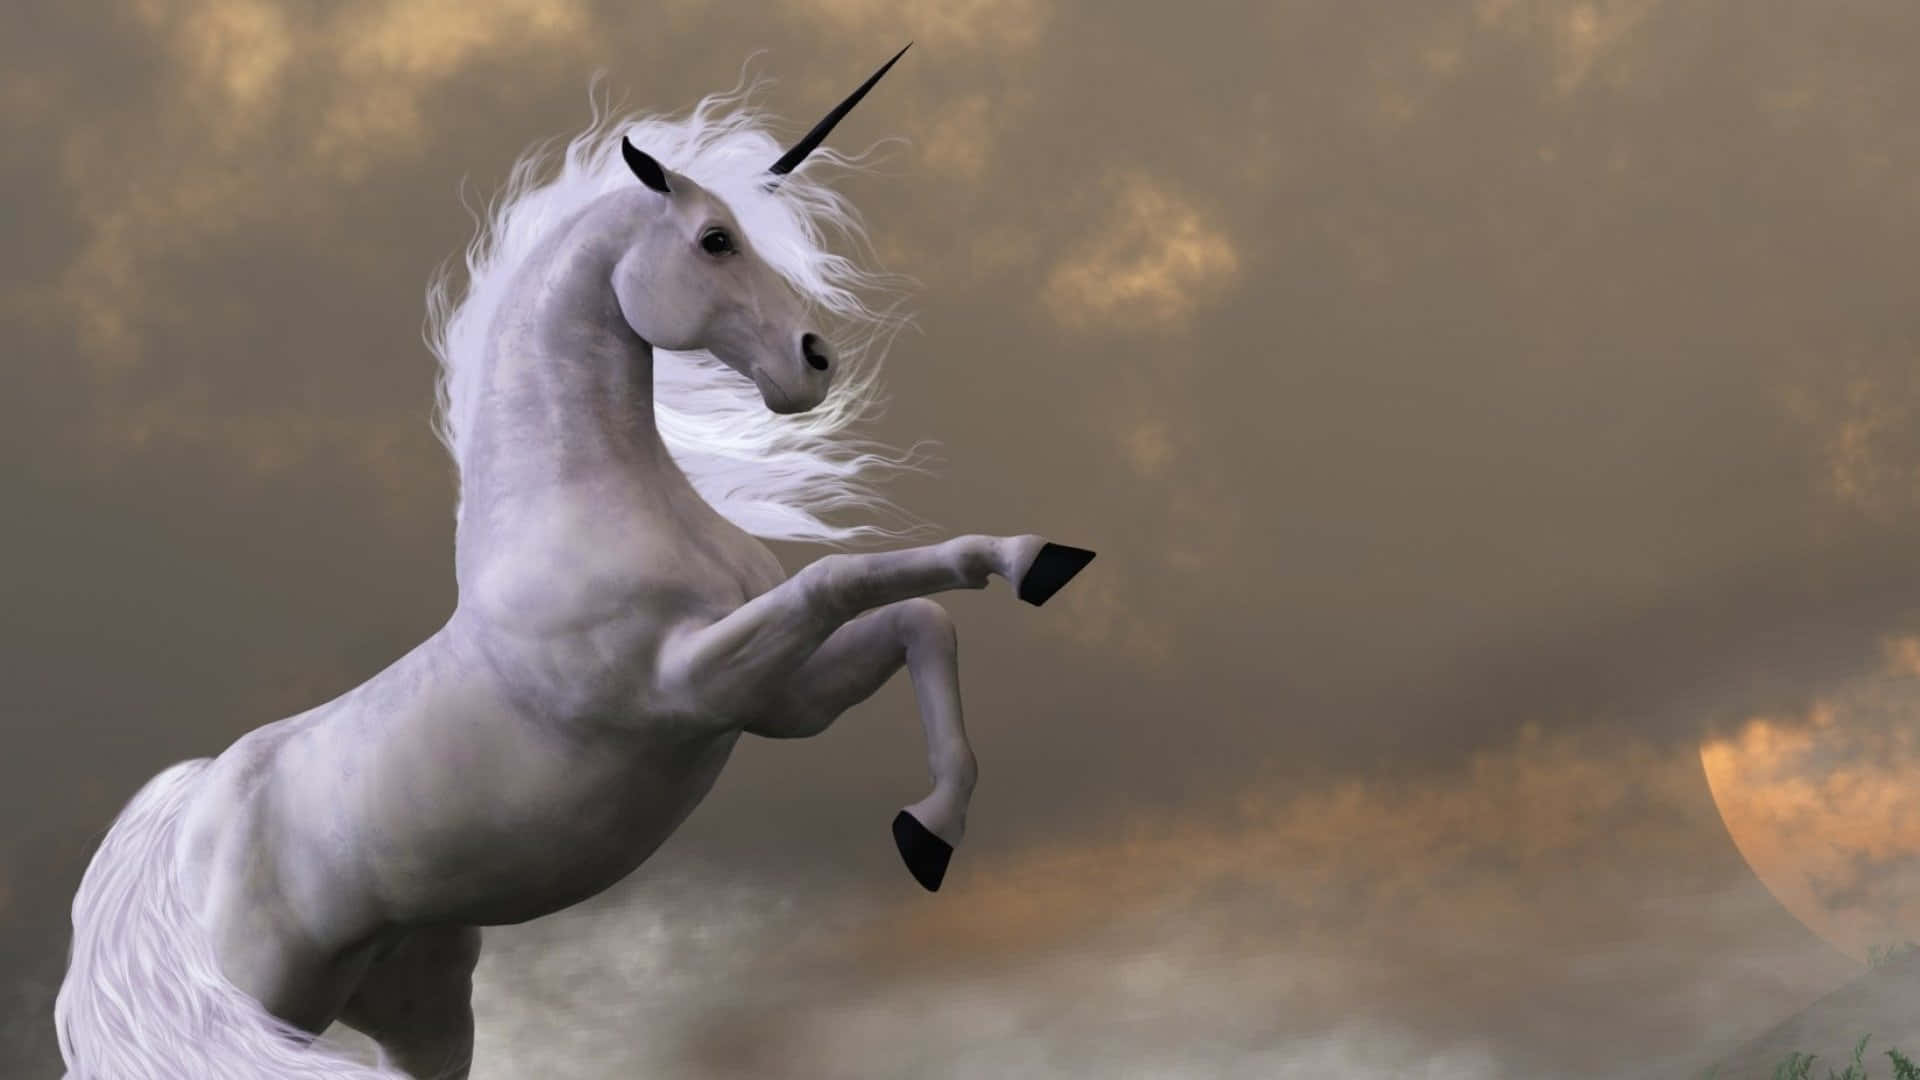 Unicornunder et stormfuldt himmelbillede